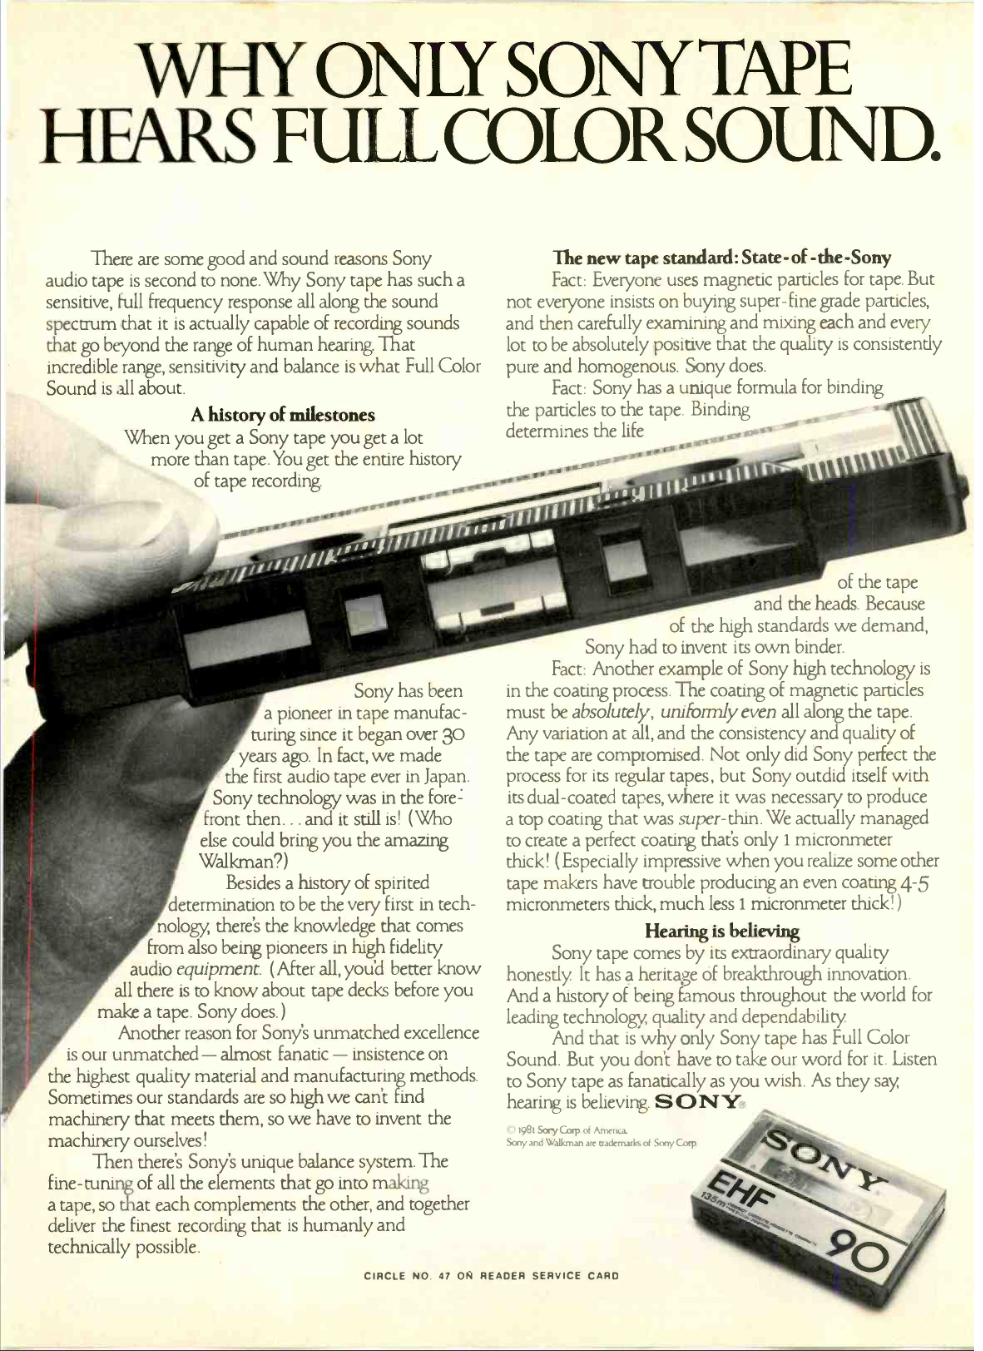 Enregistreur Cassette – Heritage Vintage™